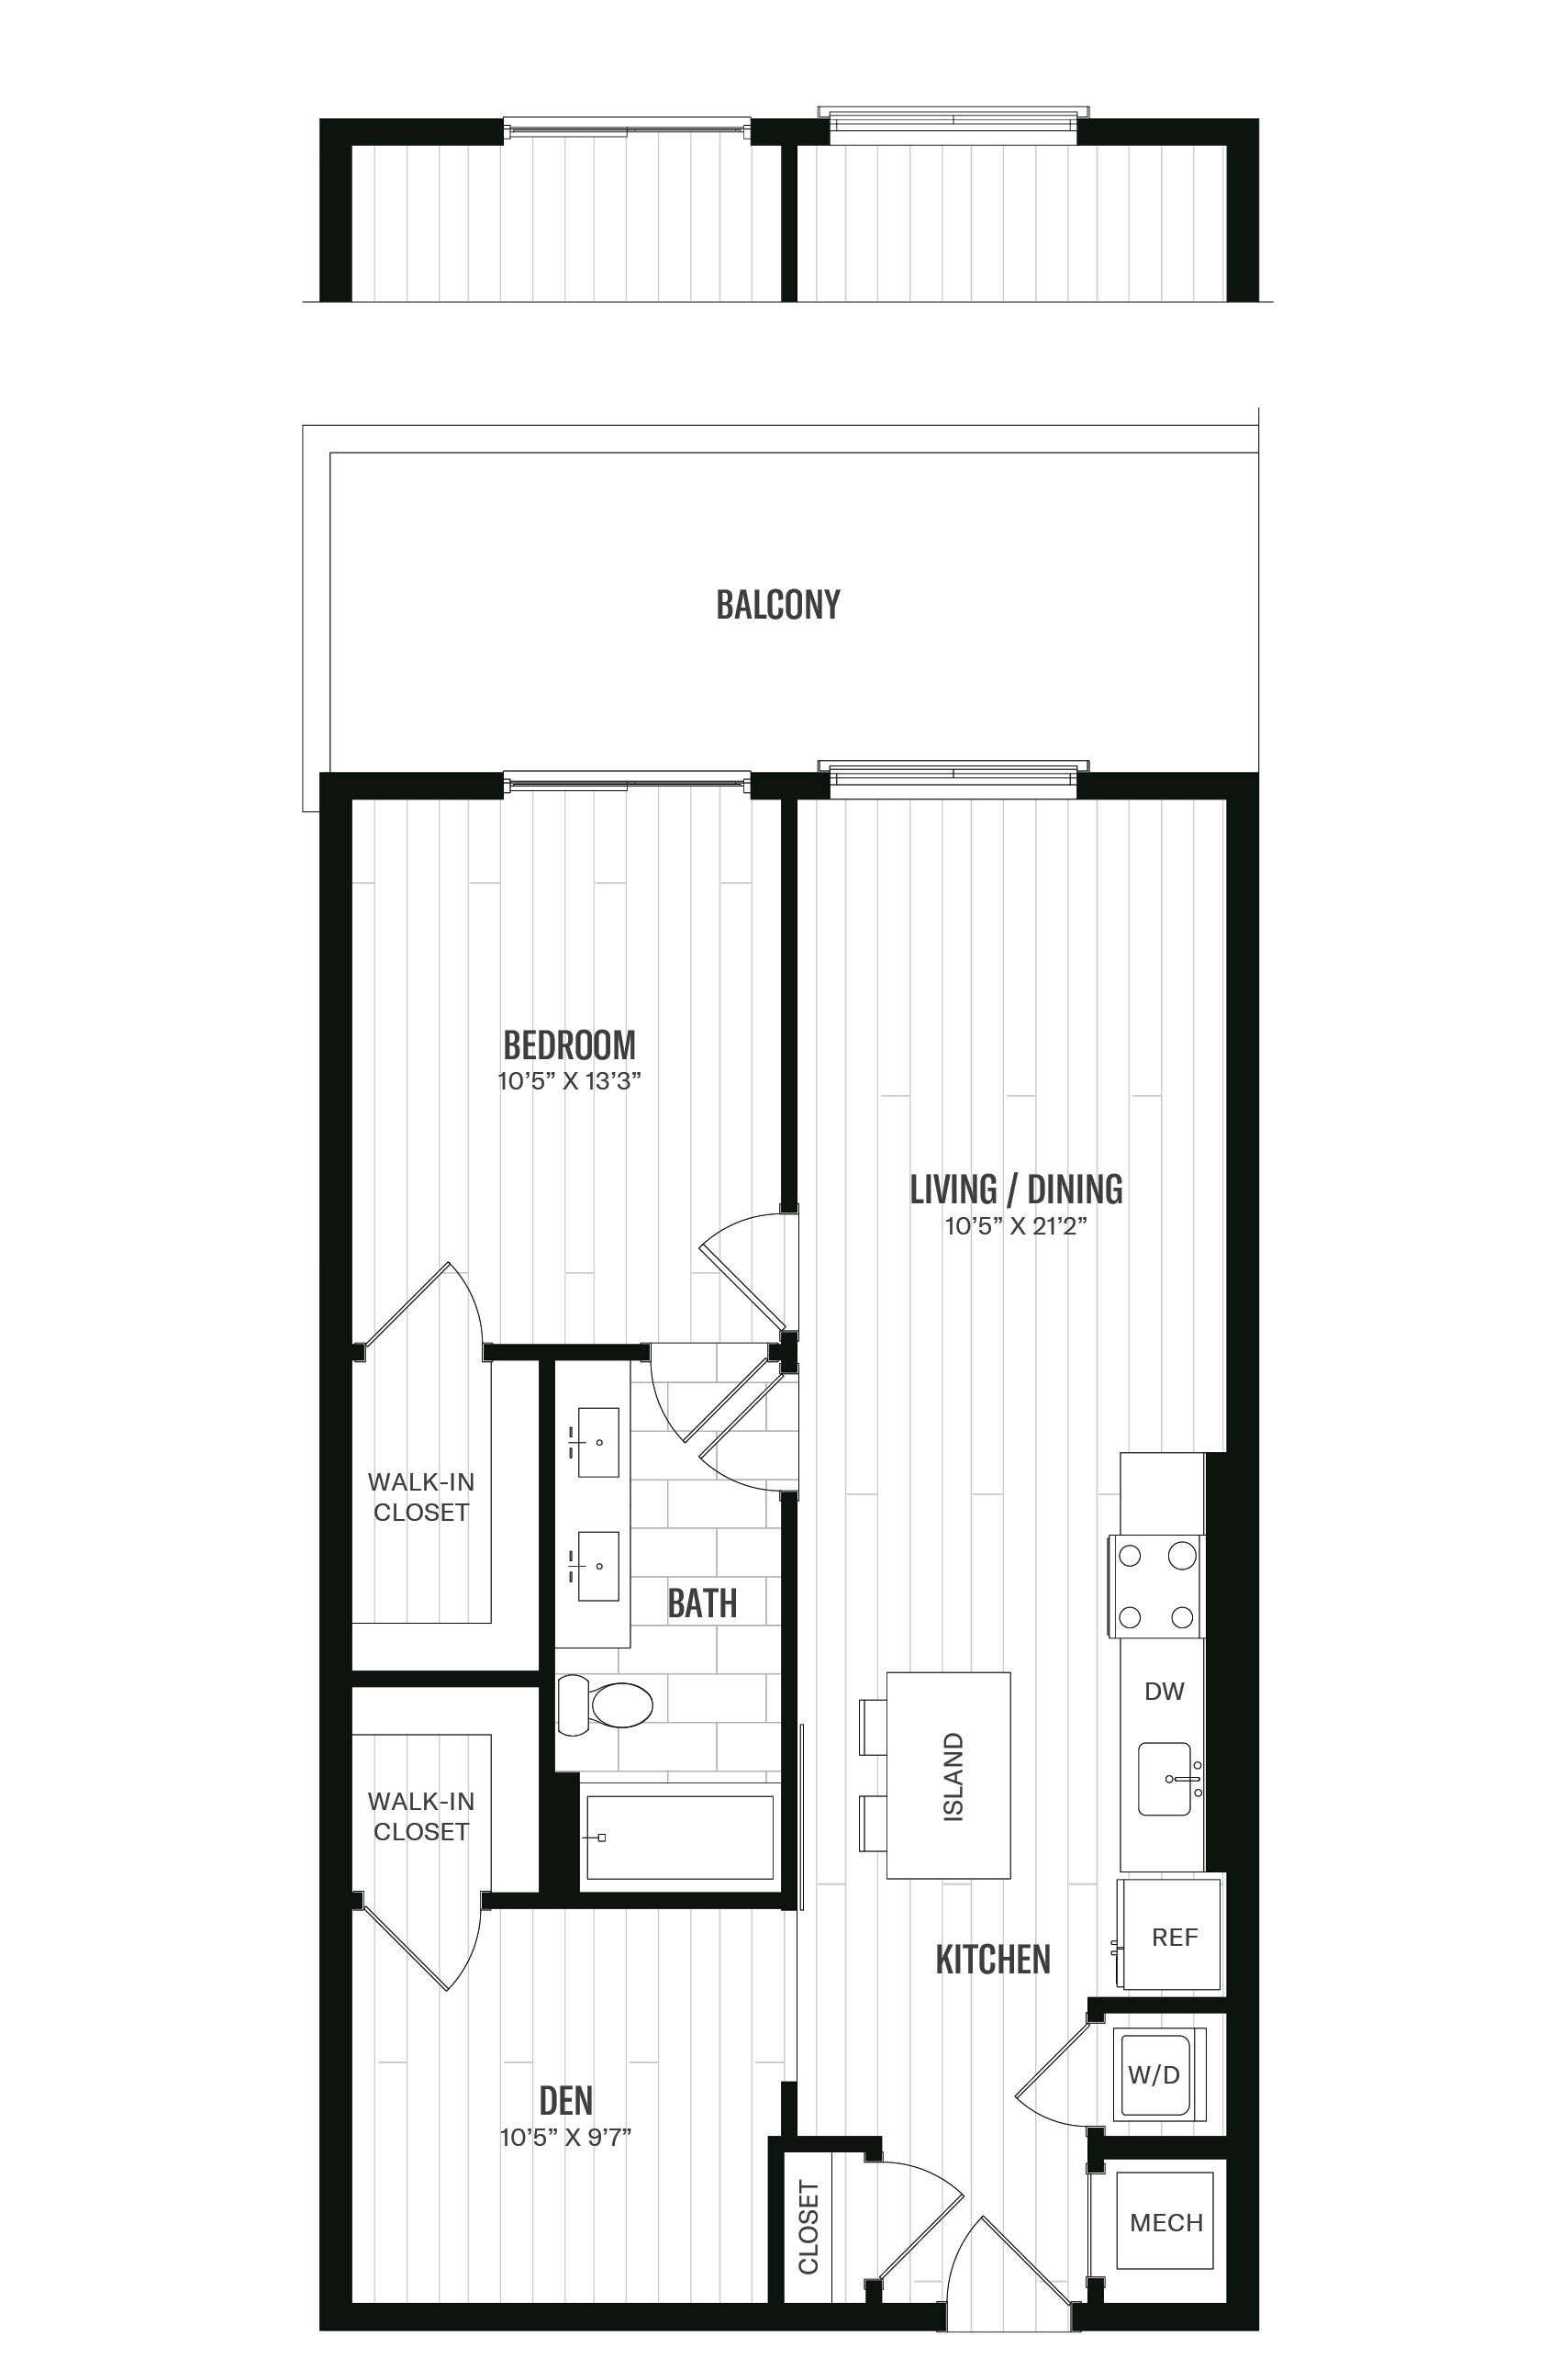 Floorplan image of unit 330